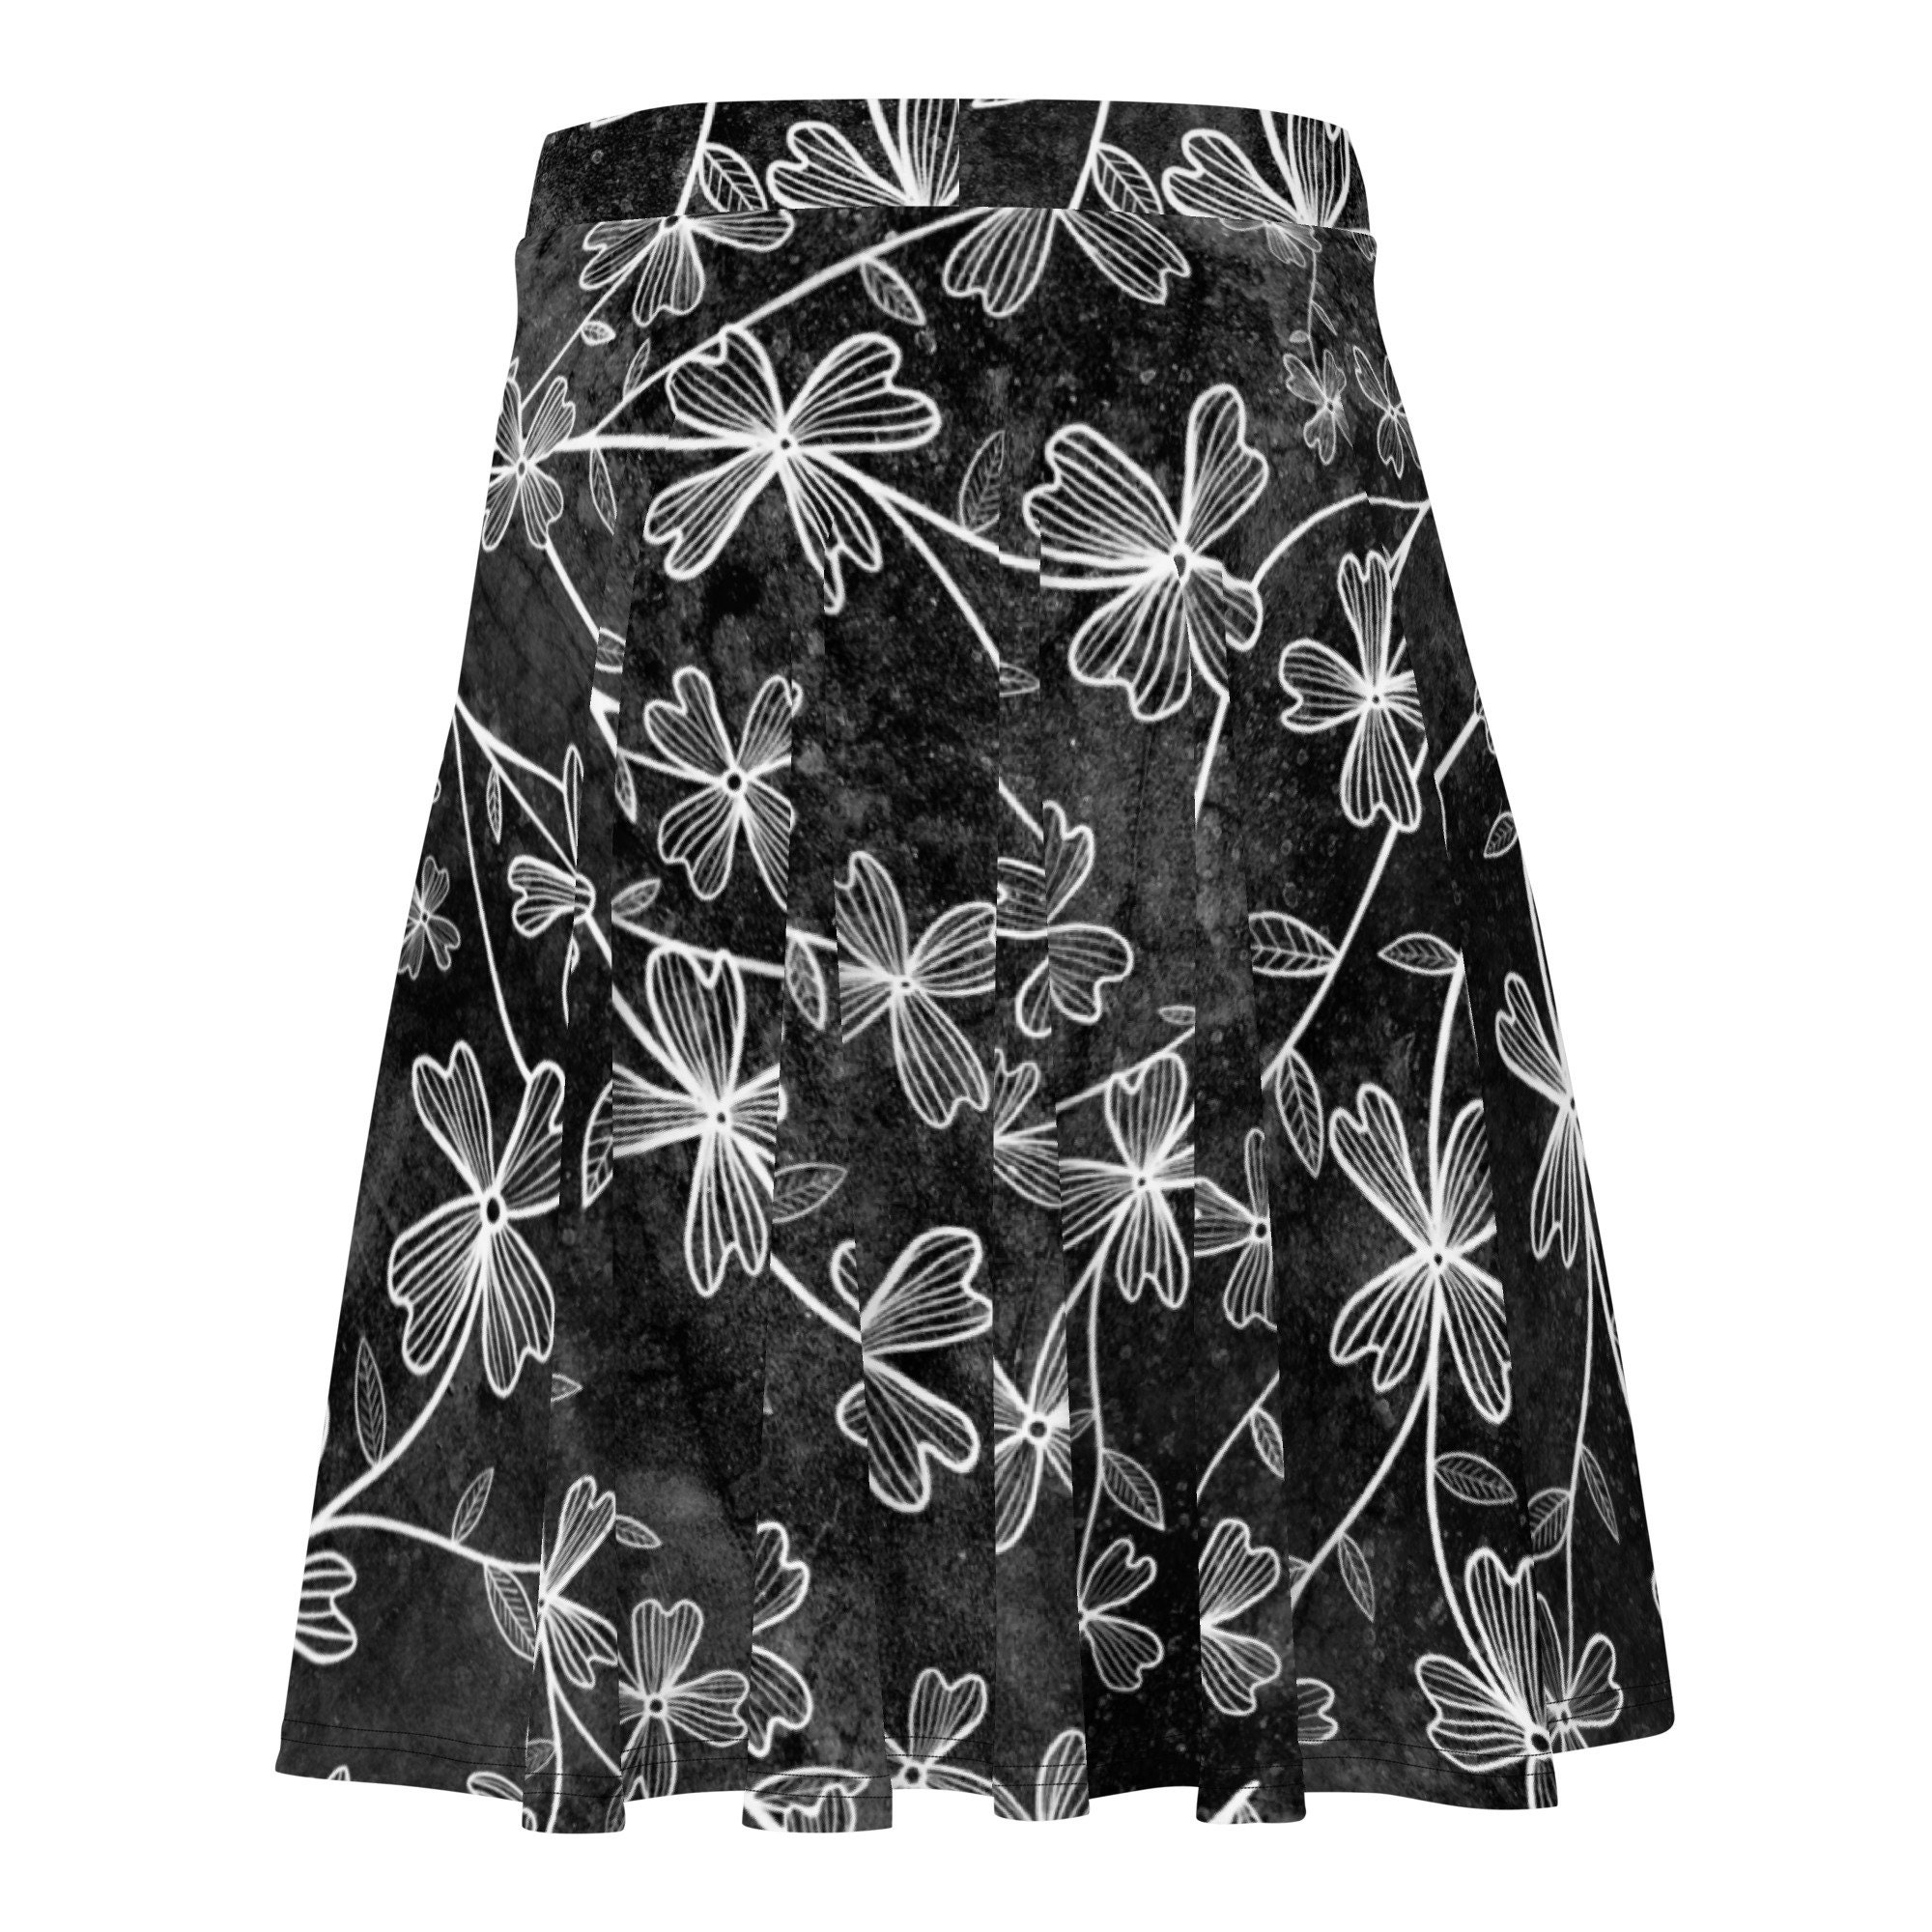 Dogwood Flowers Skater Skirt, Women's Skater Skirt